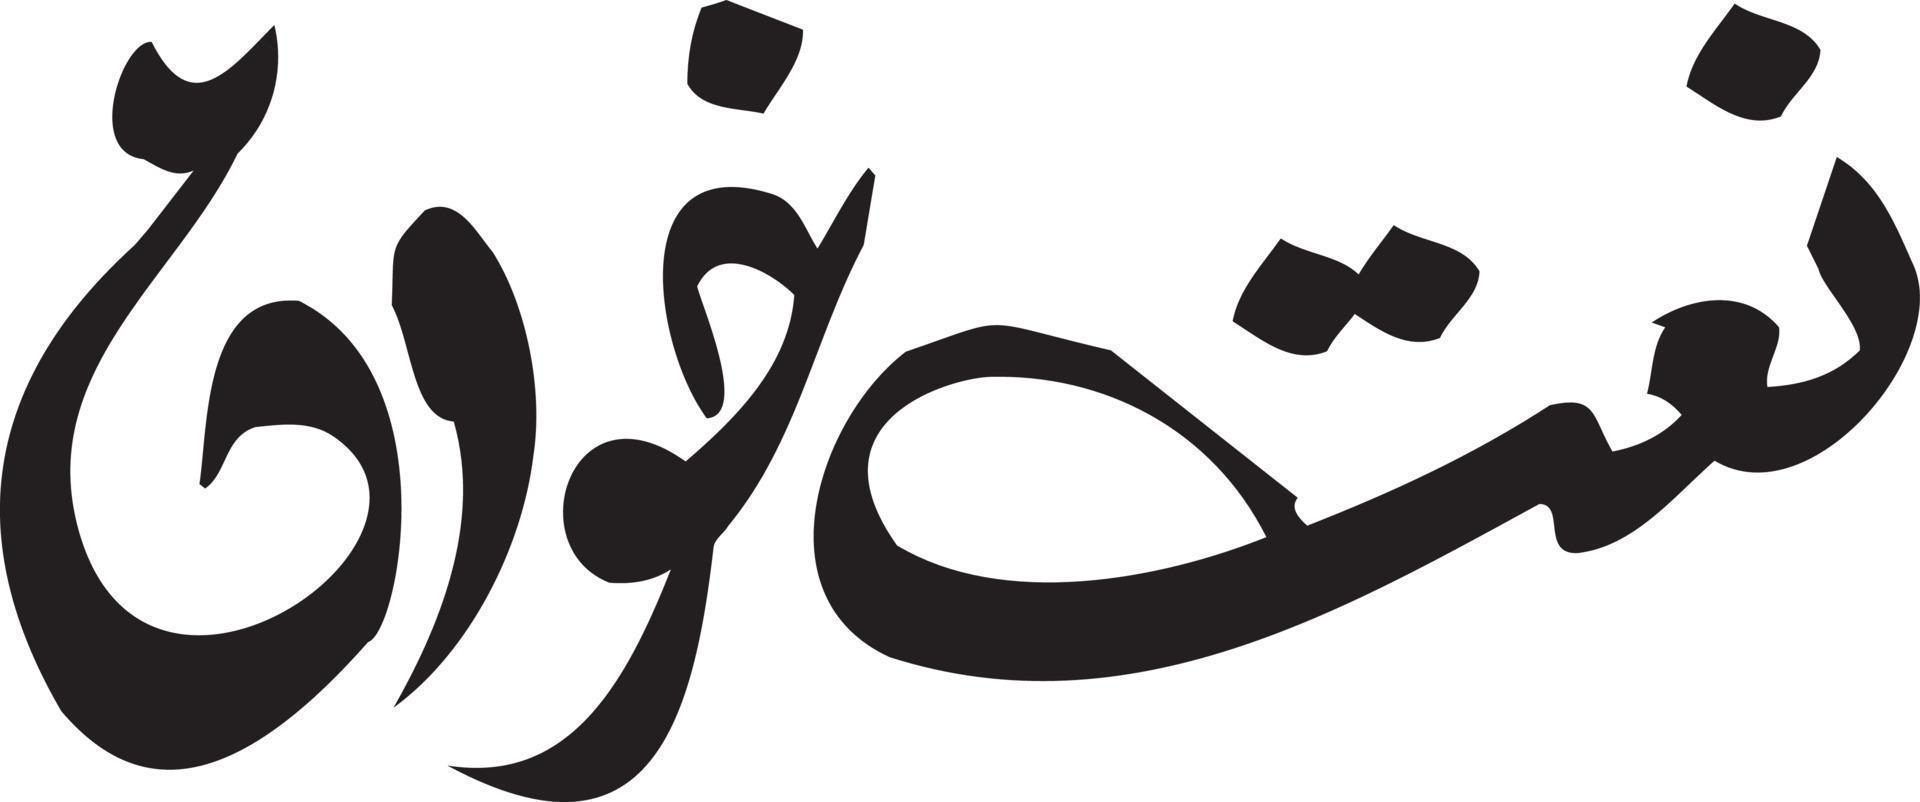 vetor livre de caligrafia islâmica naat khan